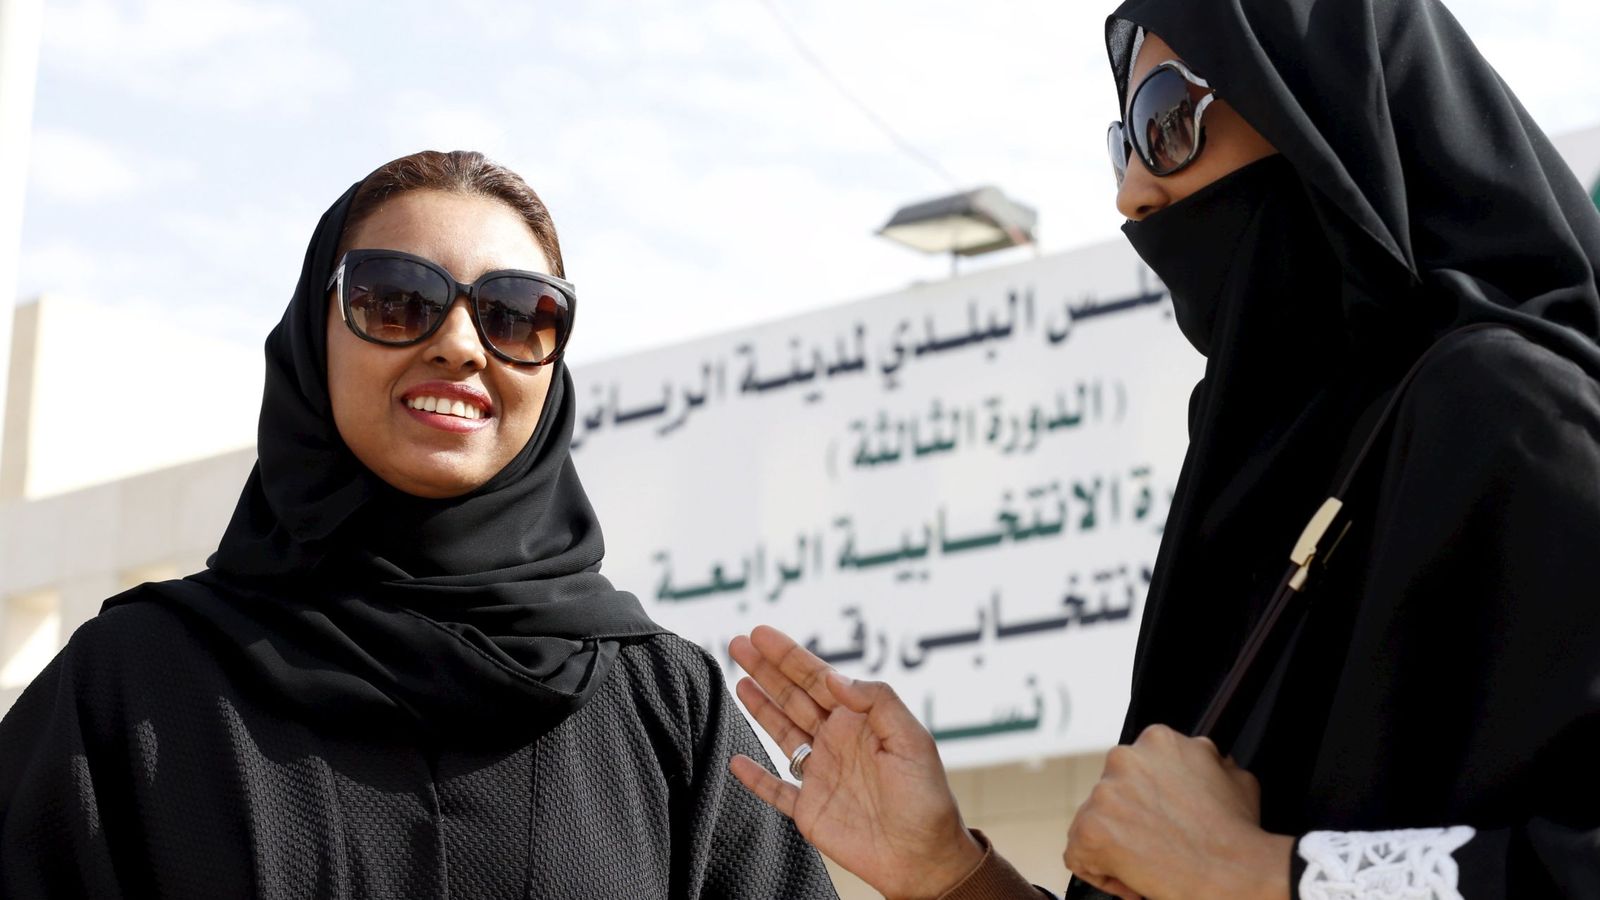 Foto: Mujeres participan por primera vez en unos comicios en Arabia Saudí (REUTERS)